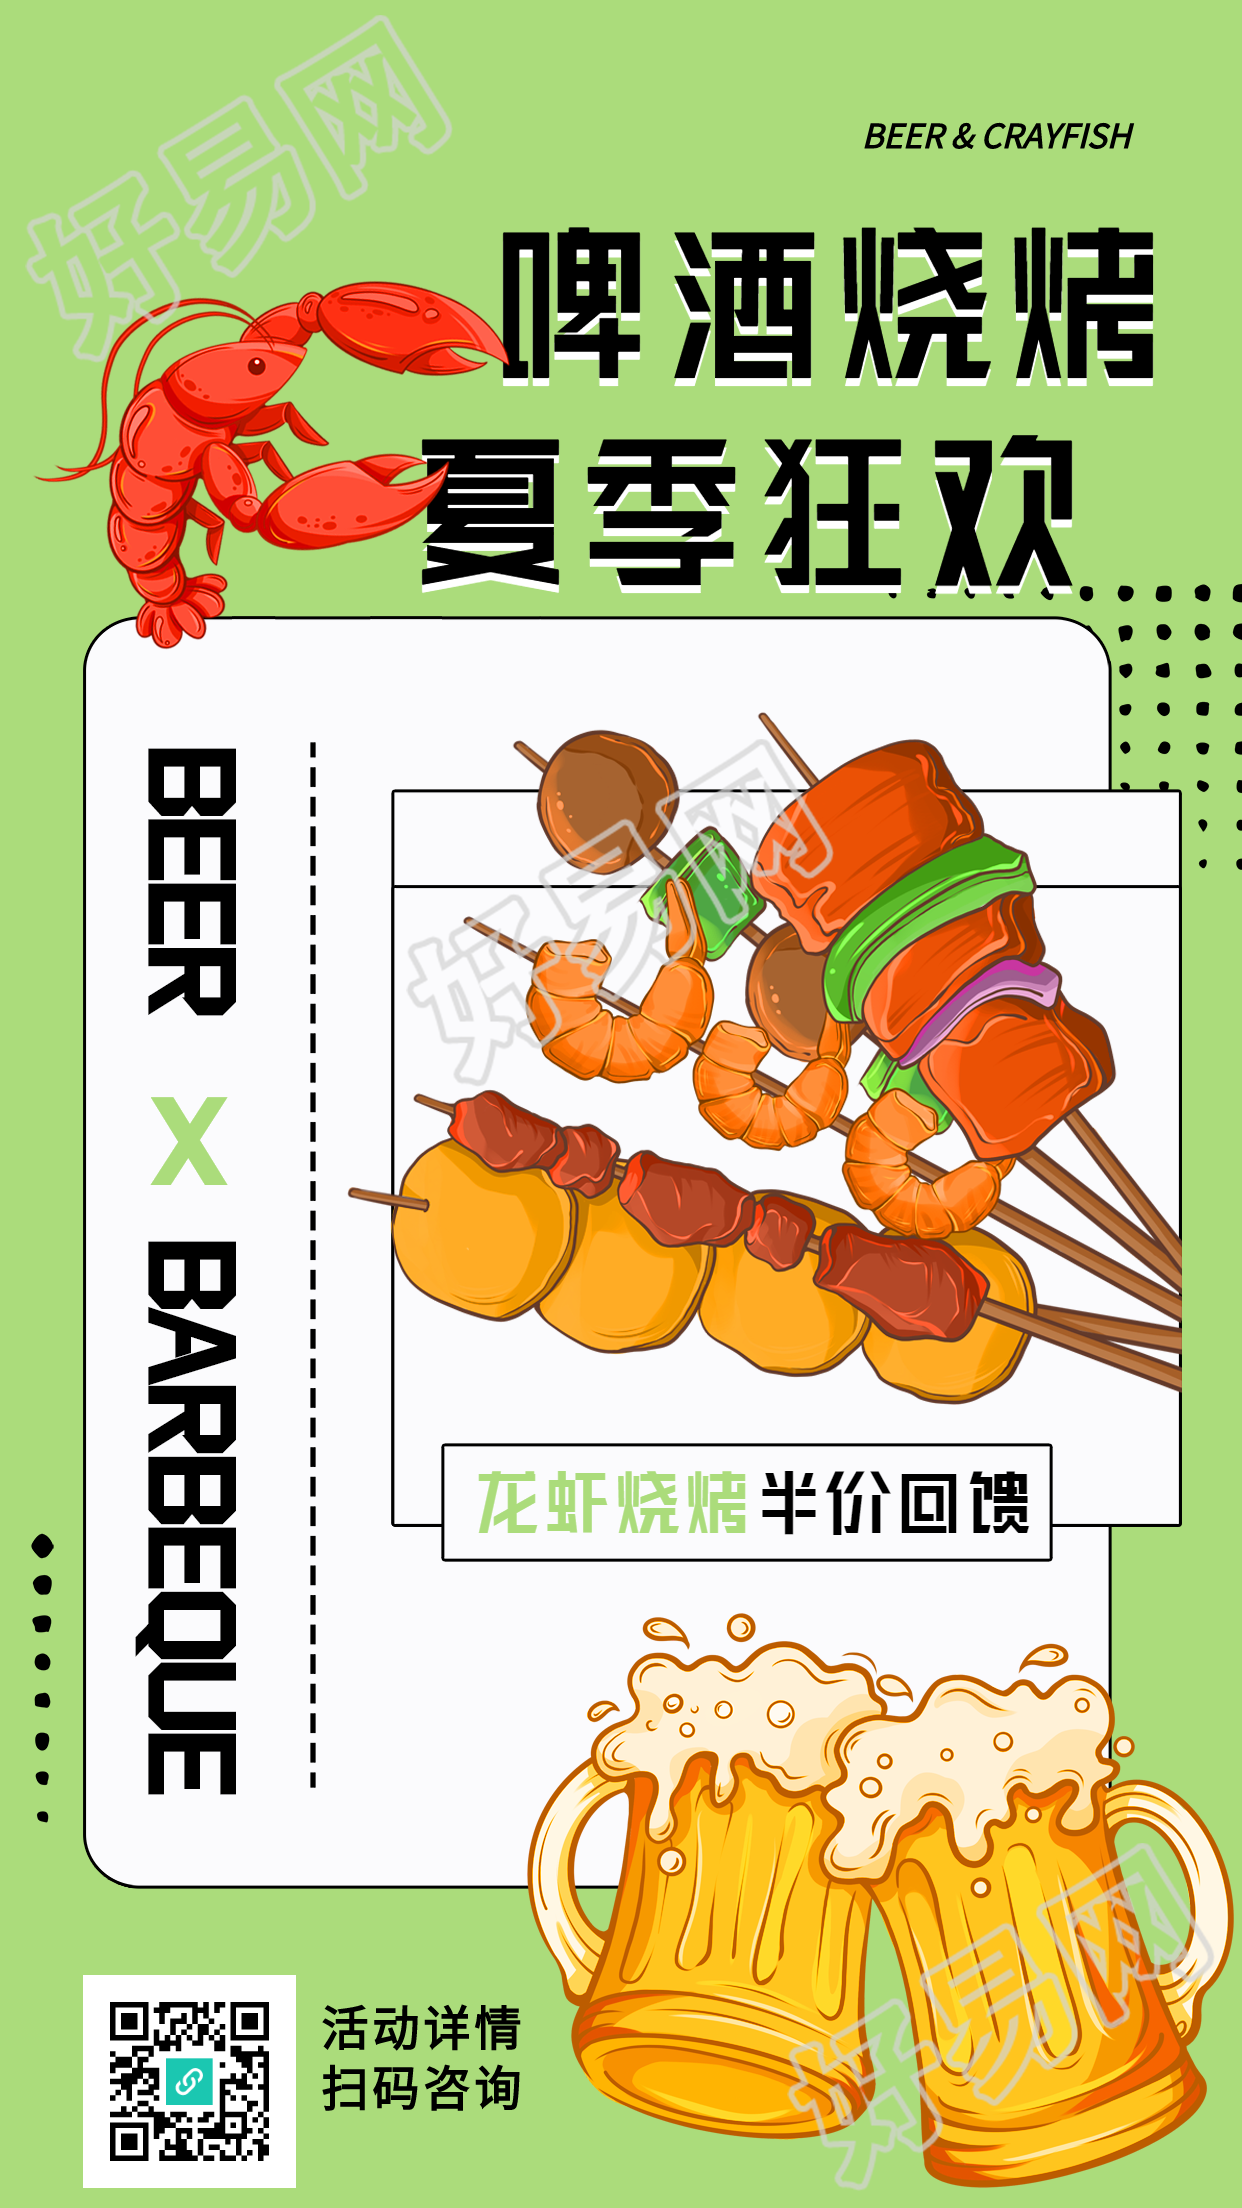 啤酒烧烤夏季狂欢龙虾美食海报